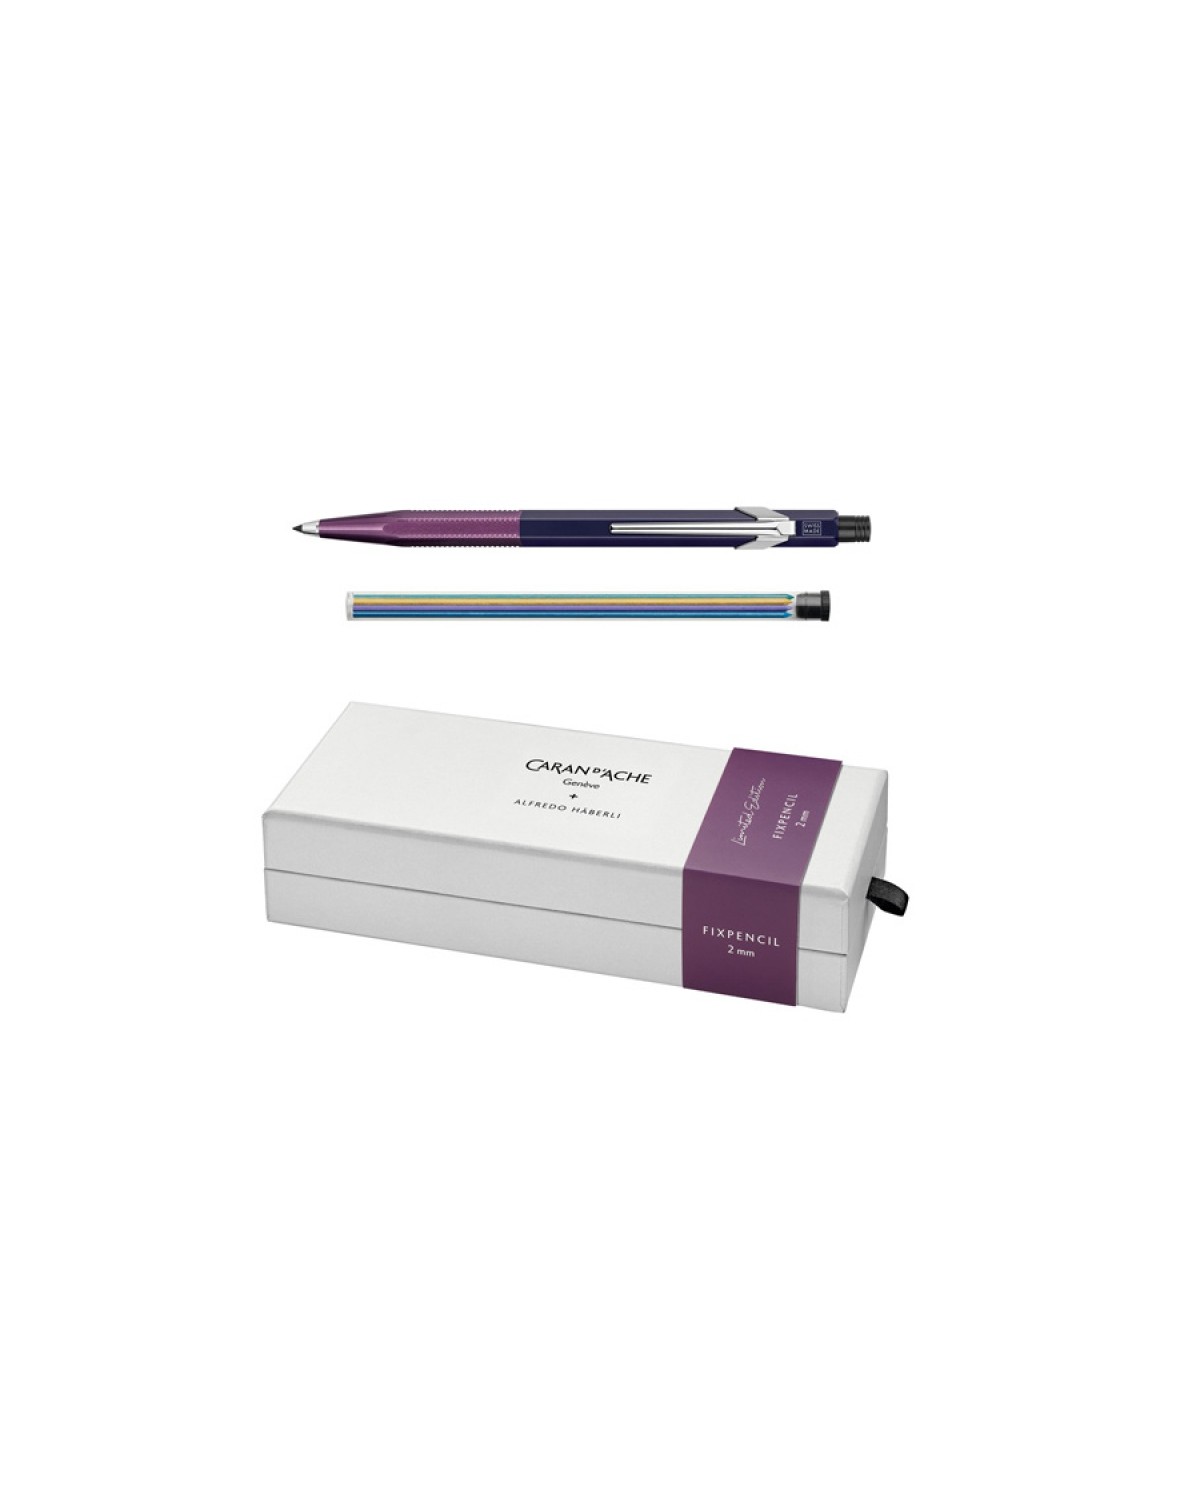 Ołówek automatyczny fixpencil caran d'ache, 2mm, a.haberli, plum